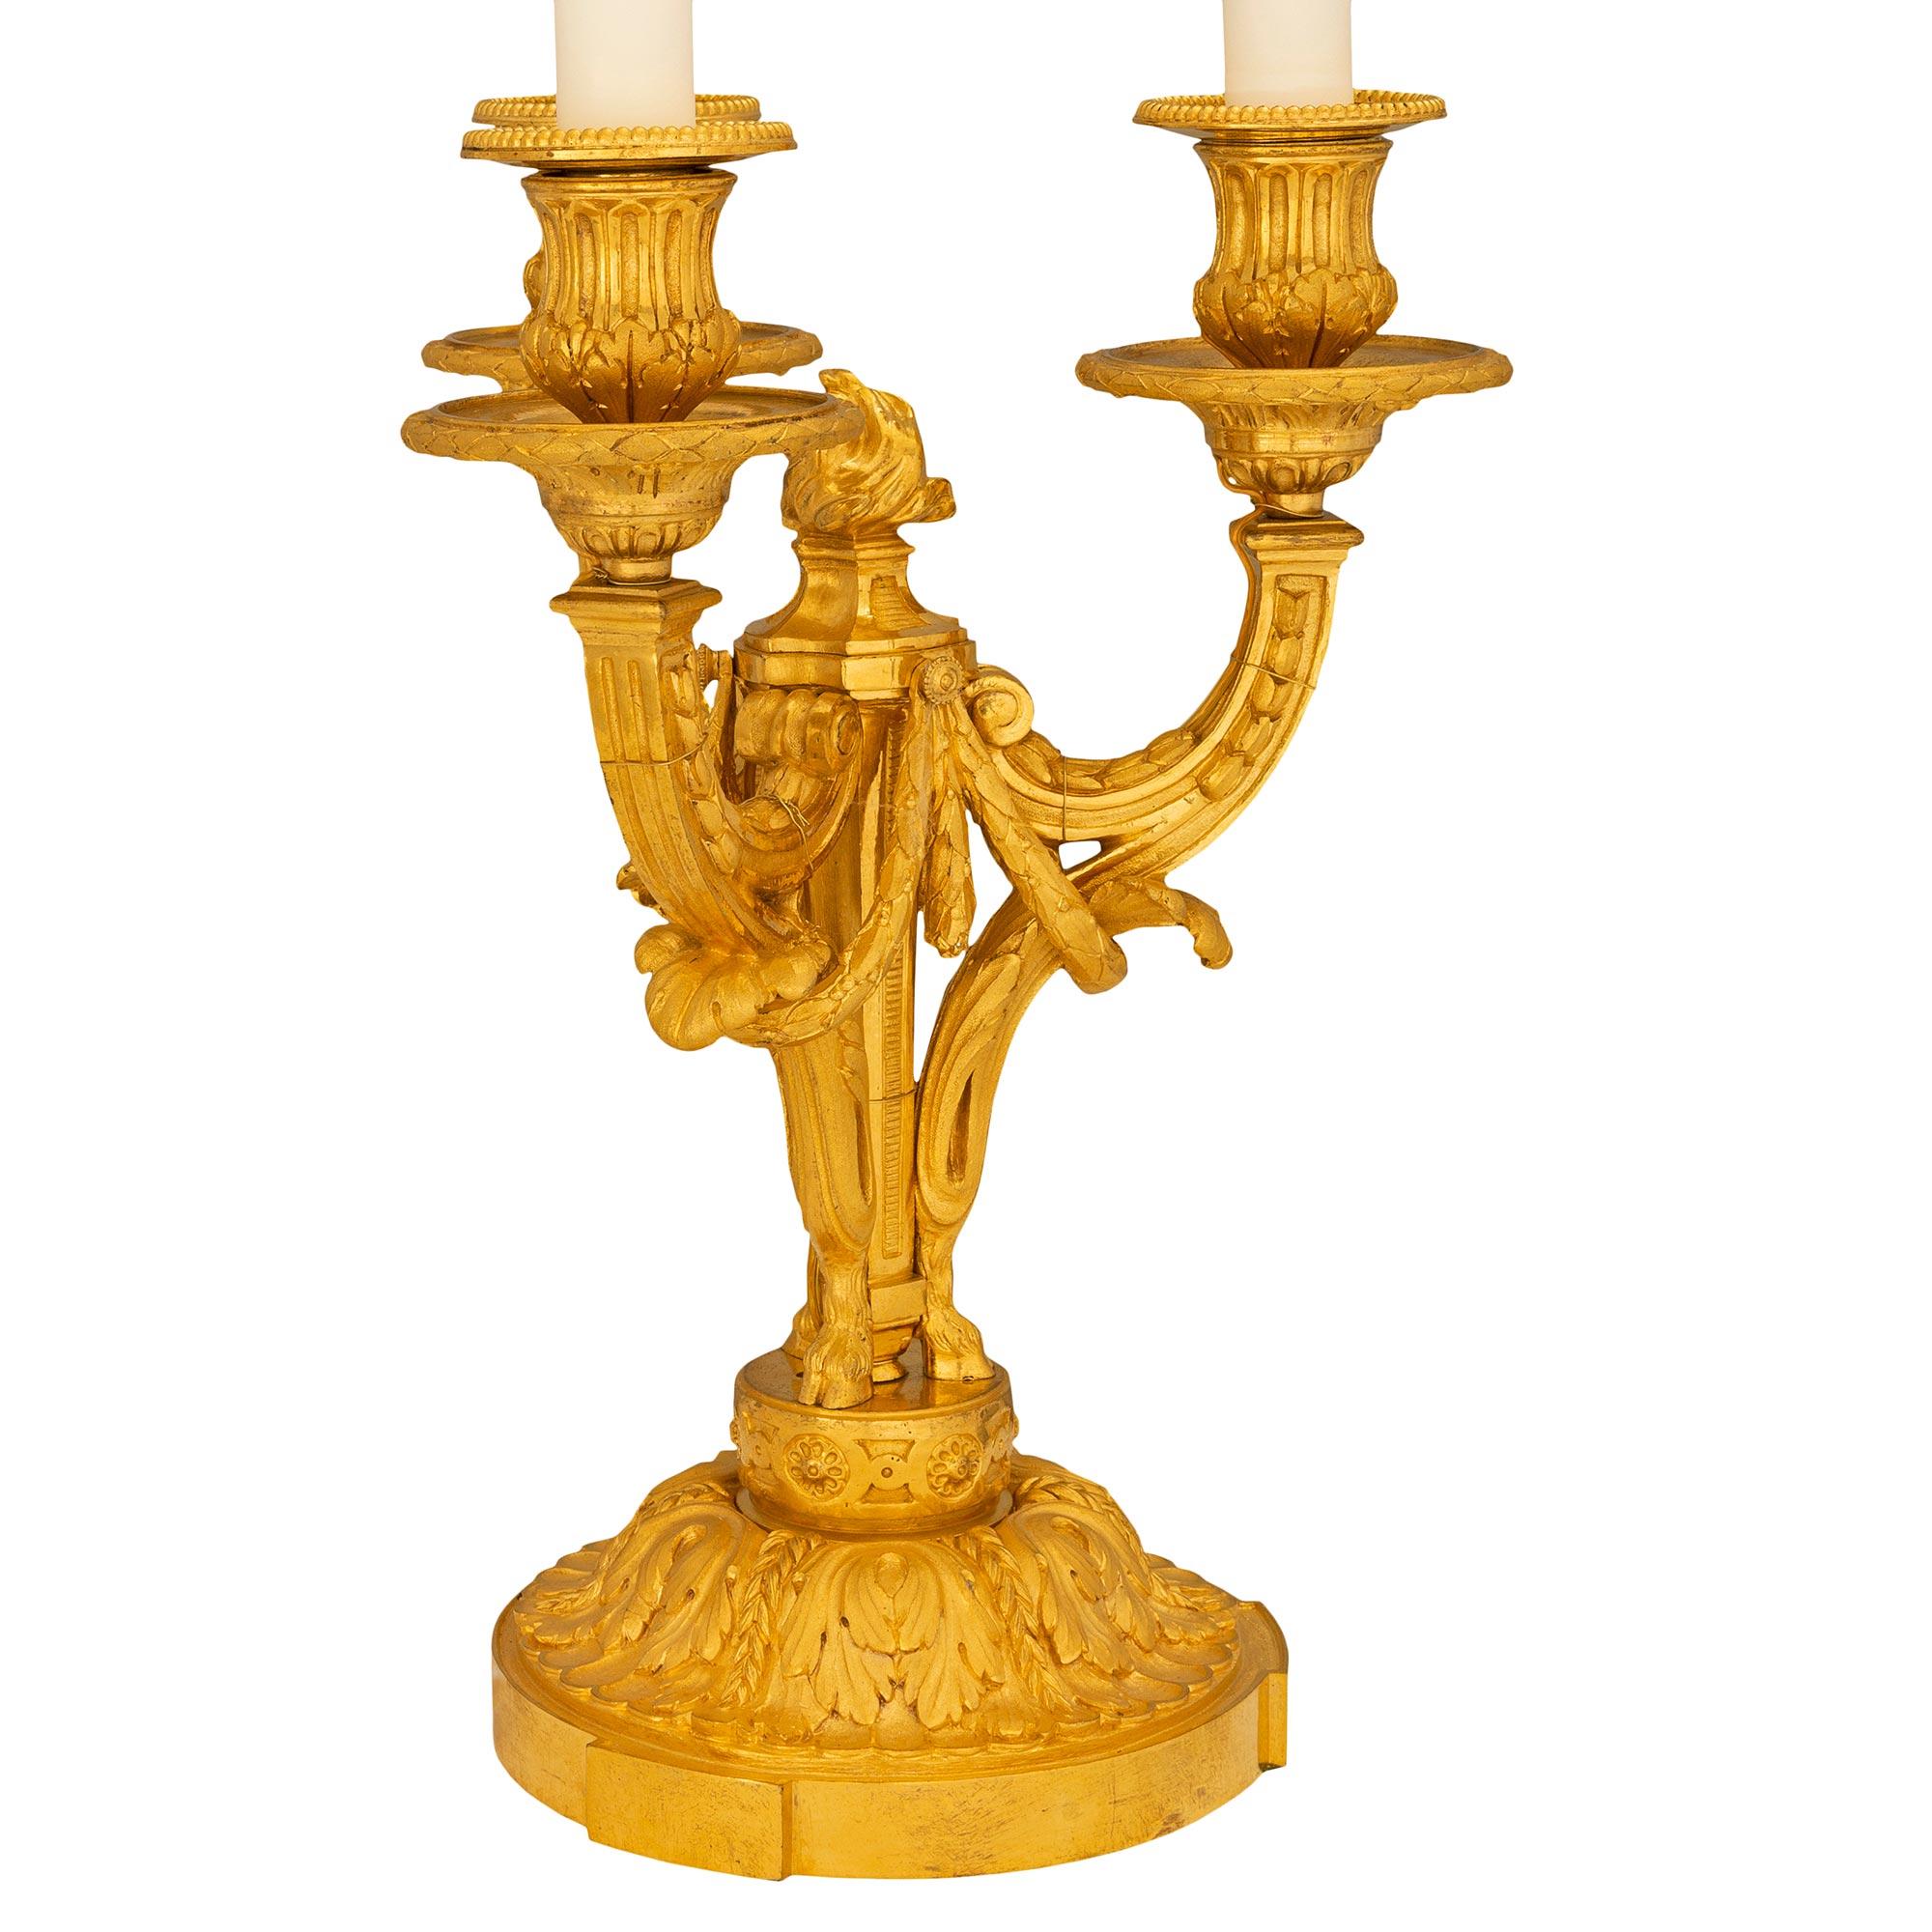 Paire d'exceptionnelles lampes candélabres à trois lumières en bronze doré de style Louis XVI du milieu du XIXe siècle. Chaque lampe richement ciselée repose sur une base ronde ornée de feuilles d'acanthe. Les bras en forme de C sont décorés de